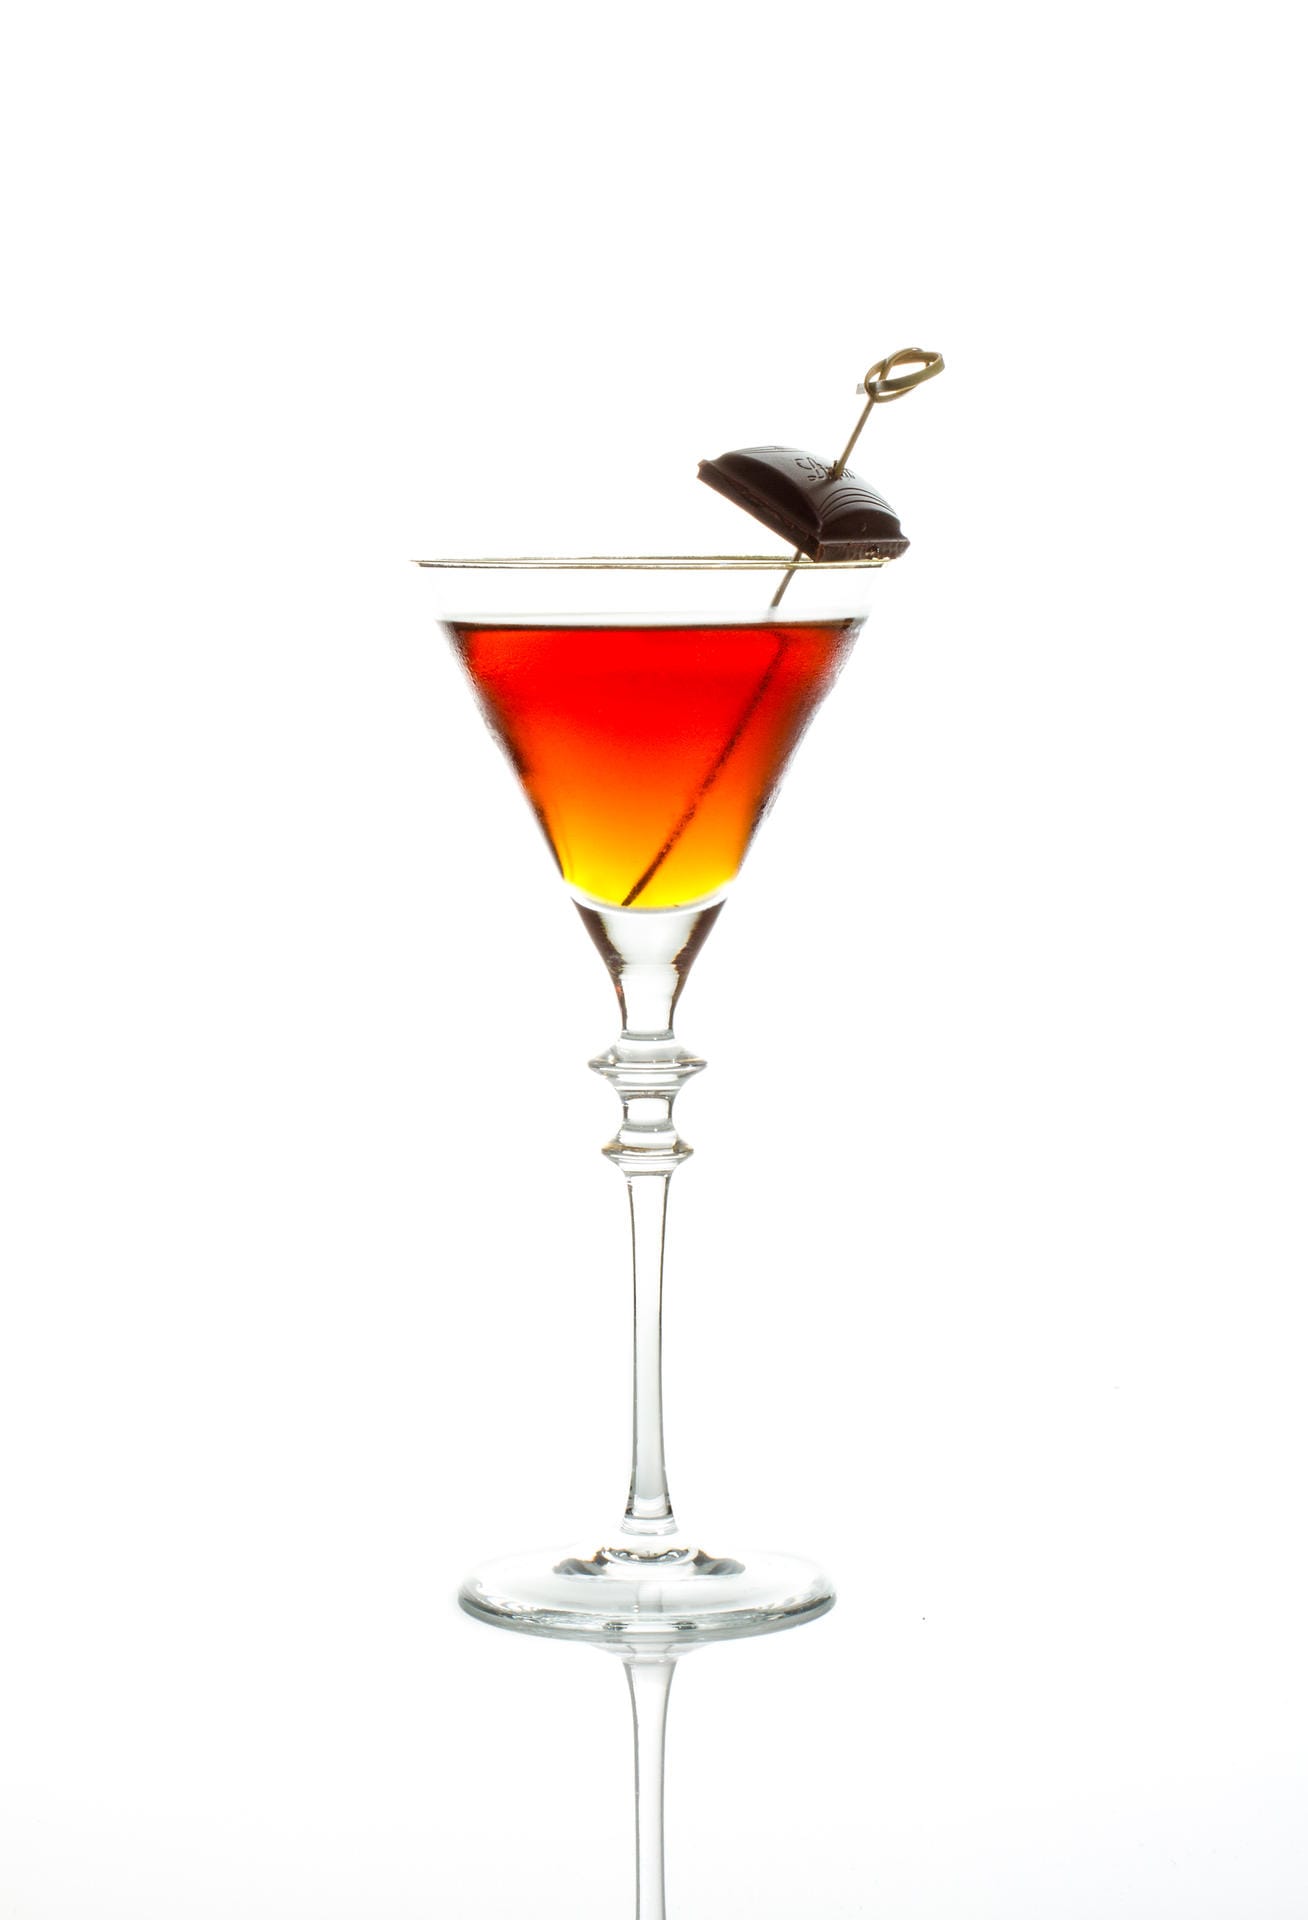 "Chi-Cho": Die Kombination aus Schokolade und Chilli soll Wohlgefühl und Wärme vermitteln. Unterstützt wird dieses innere Gefühl durch einen sieben Jahre alten Havana Club Rum und einen Vermouth Antica Formula.